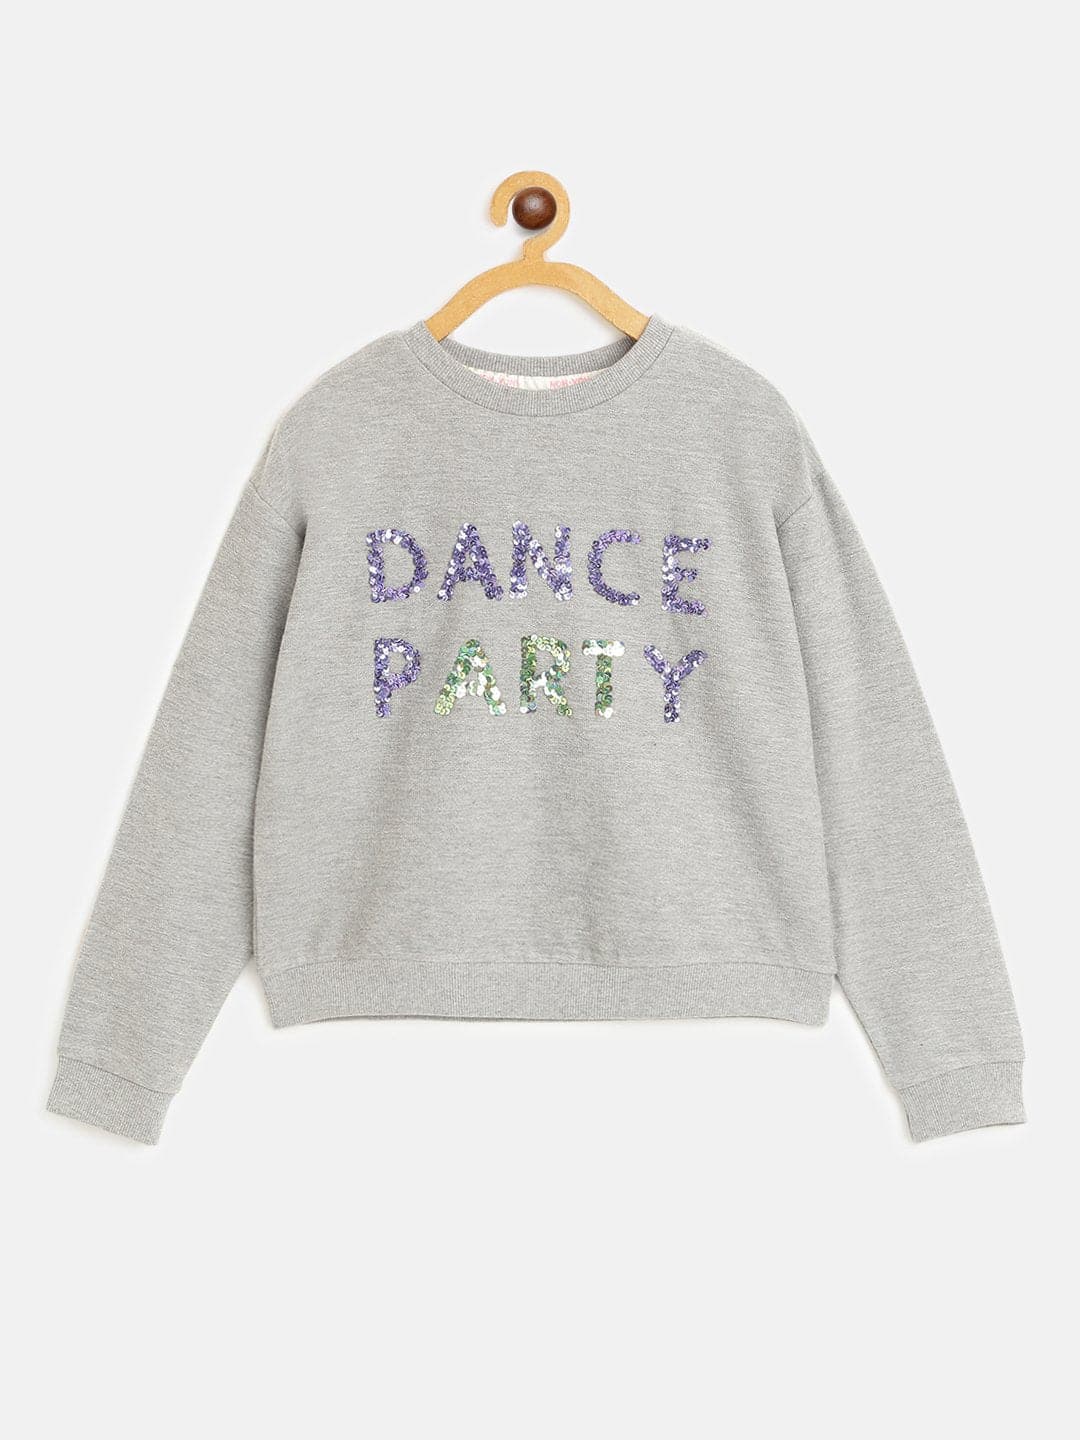 Girls Grey DANCE PARTY Embroidered Sweatshirt-Girls Sweatshirts-SASSAFRAS